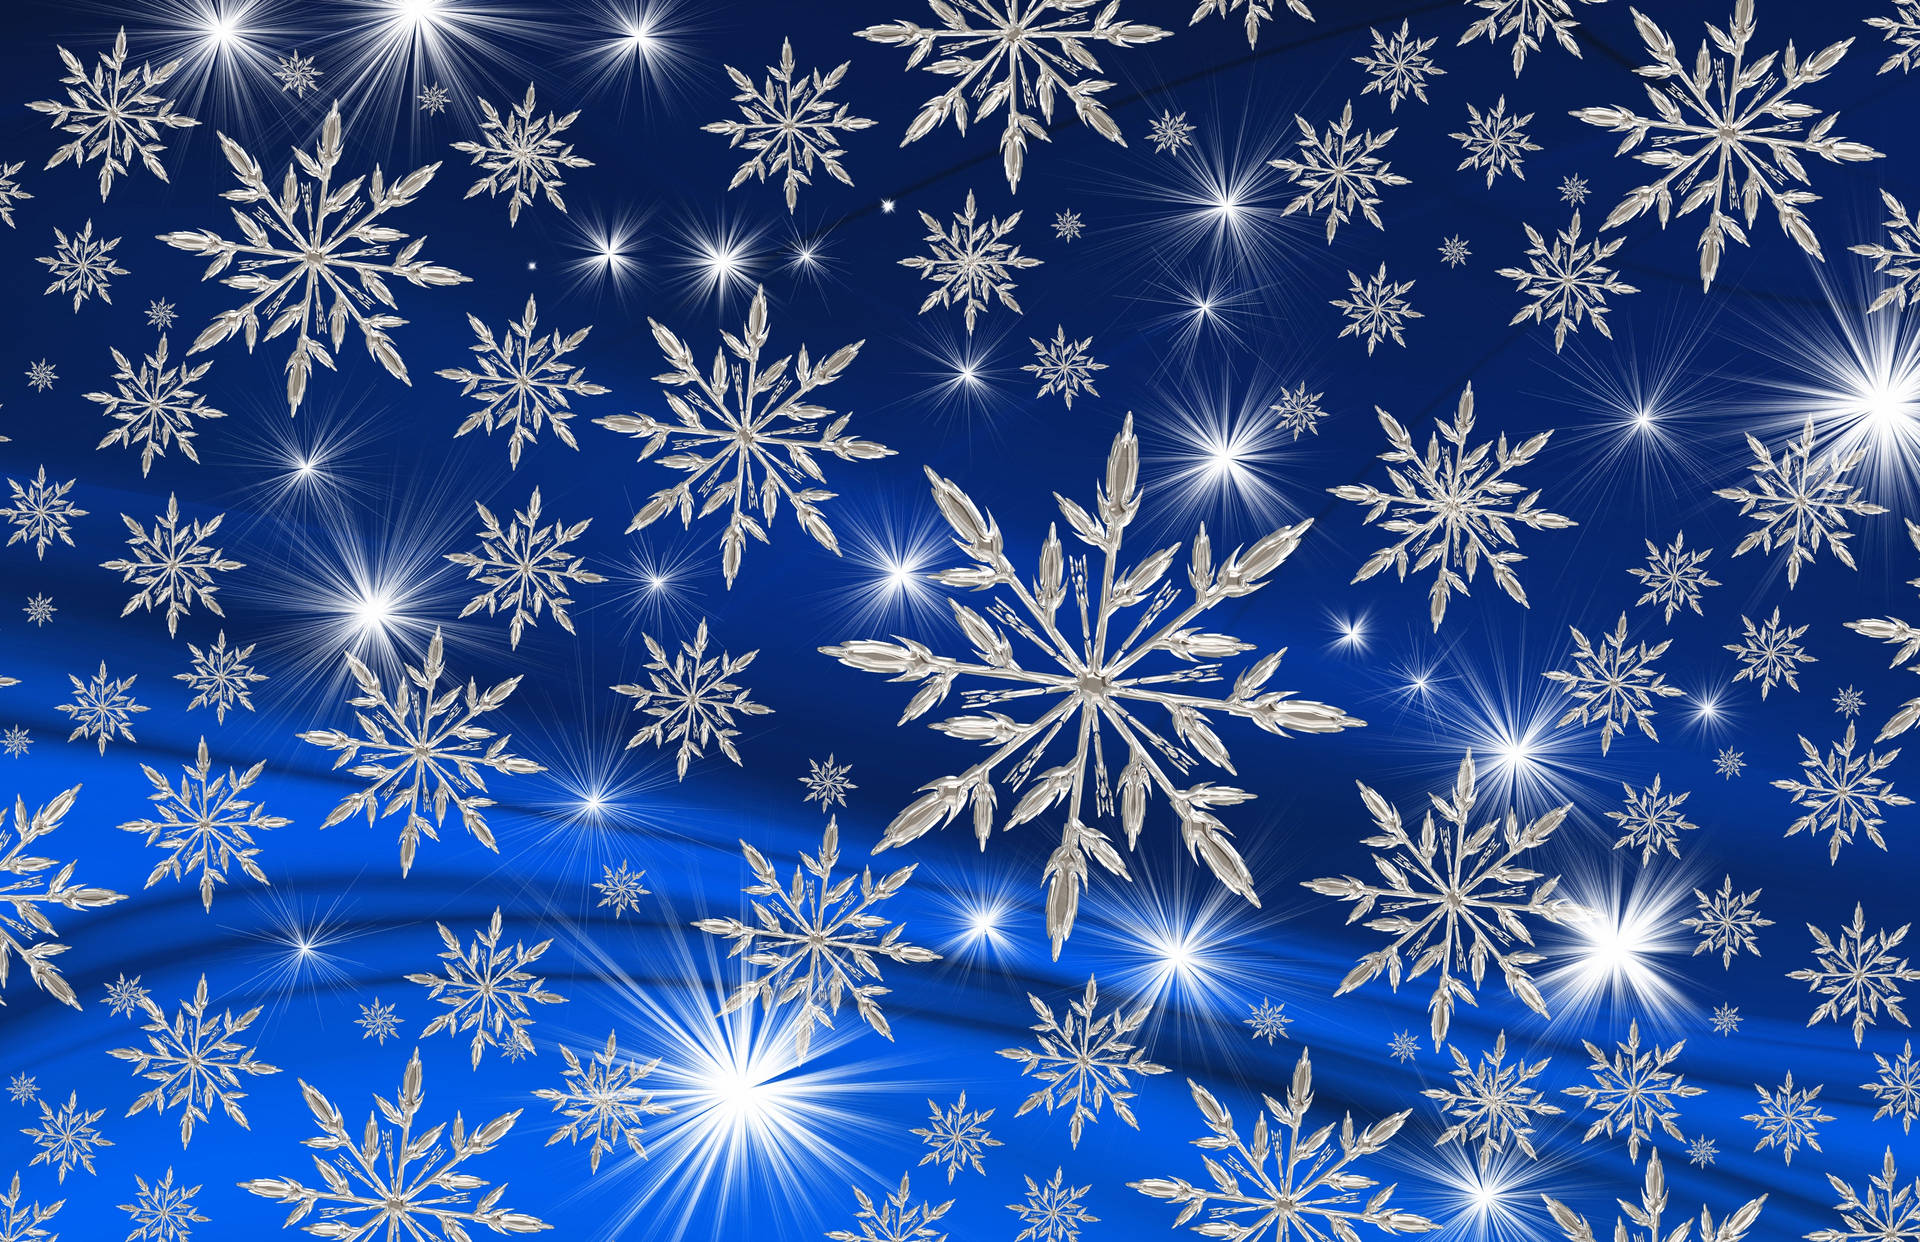 Enchanting Christmas Snowflakes Wallpaper